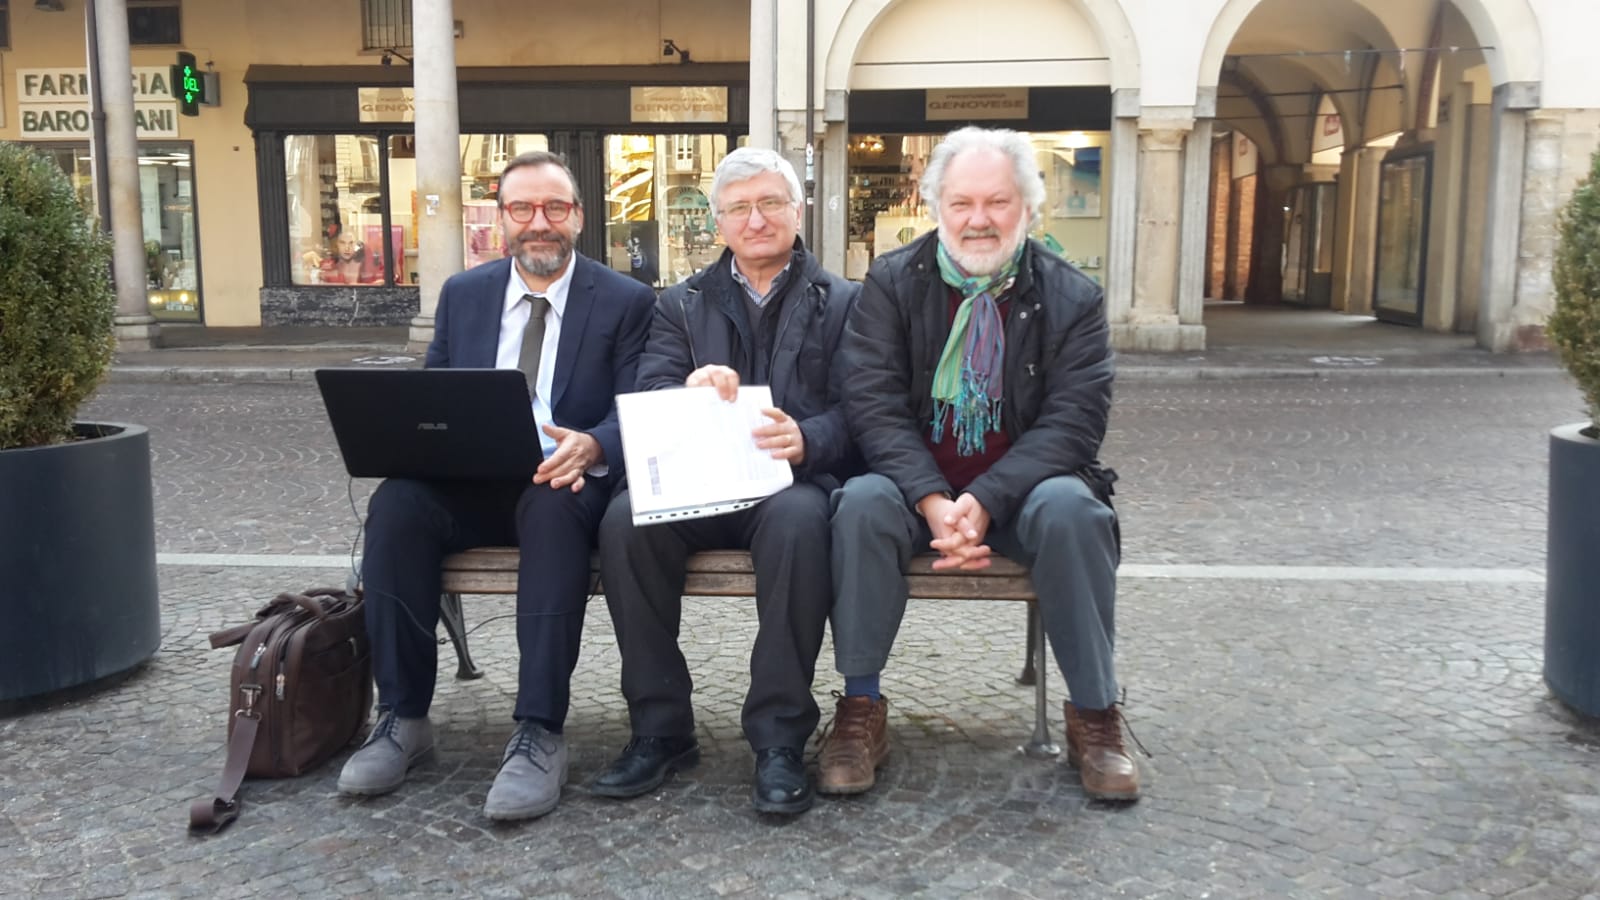 Foto ricordo dell incontro preparatorio del sopralluogo ai viali alberati della Città di Asti con Marco Devecchi, Angelo Porta e Giancarlo Dapavo.